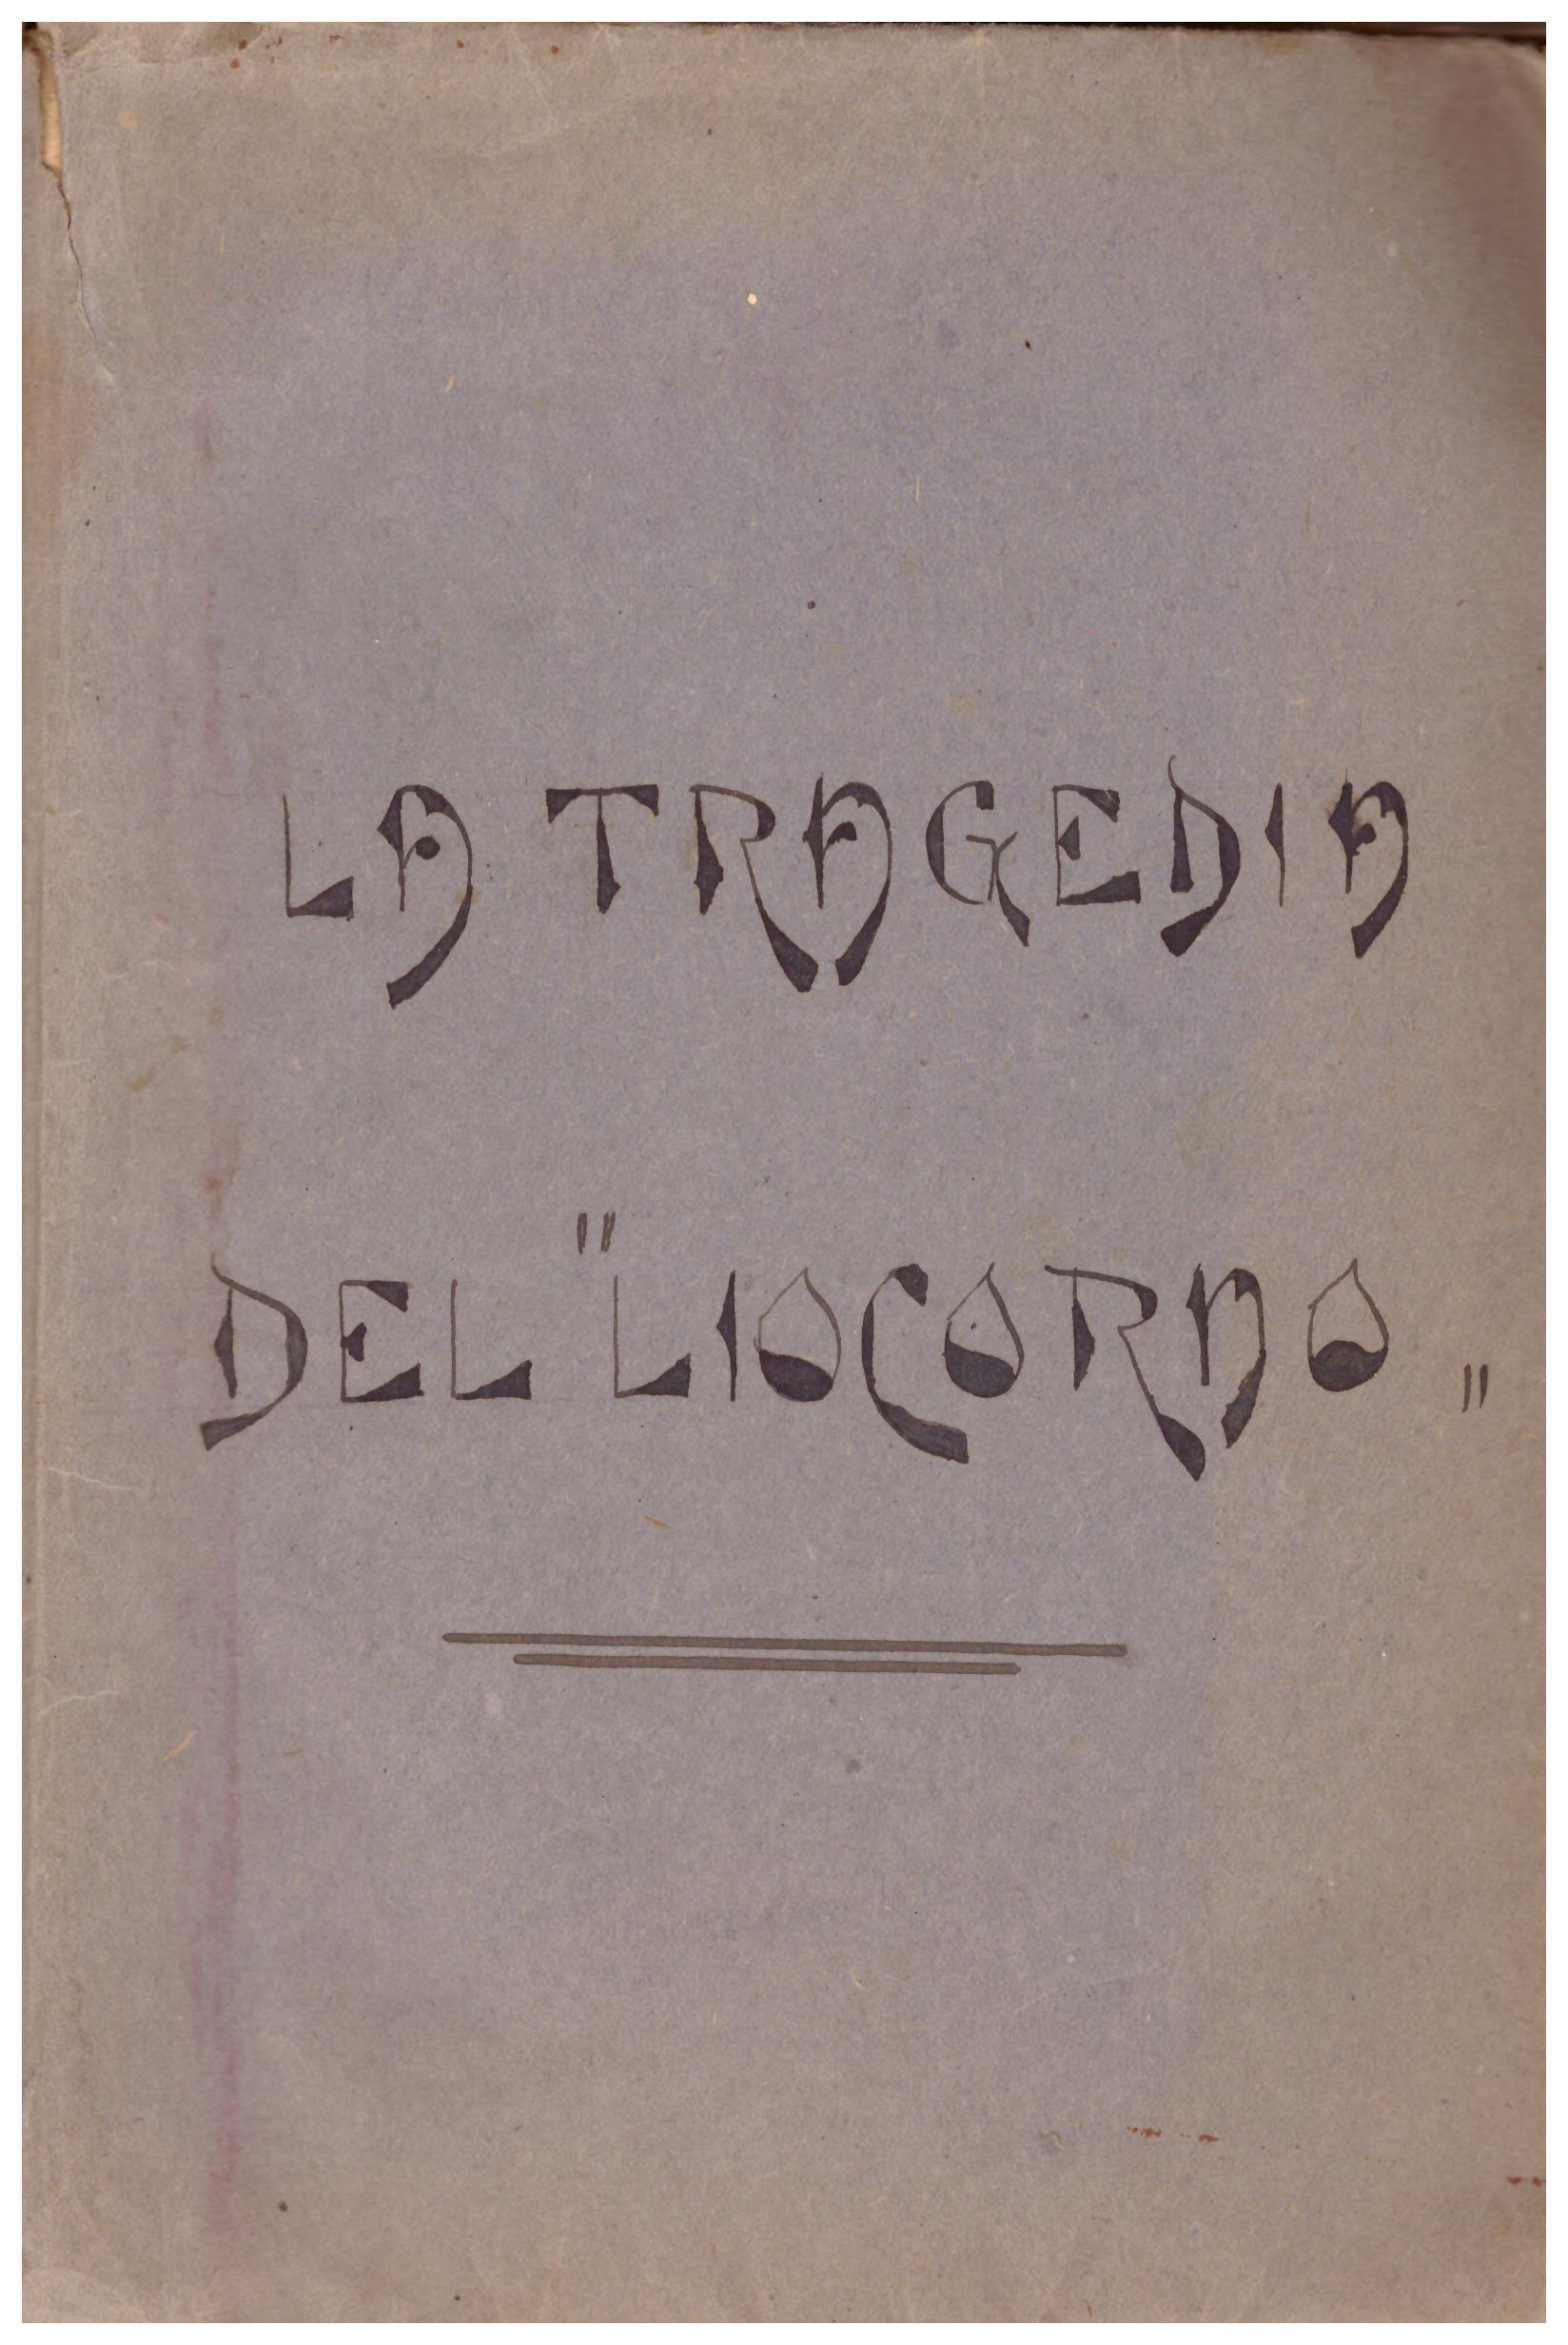 Titolo: La tragedia del "Liocorno"  Autore: Giovanni Rhode, traduzione dall'inglese di Adele Levi  Editore: Nicola Moneta, Milano 1931